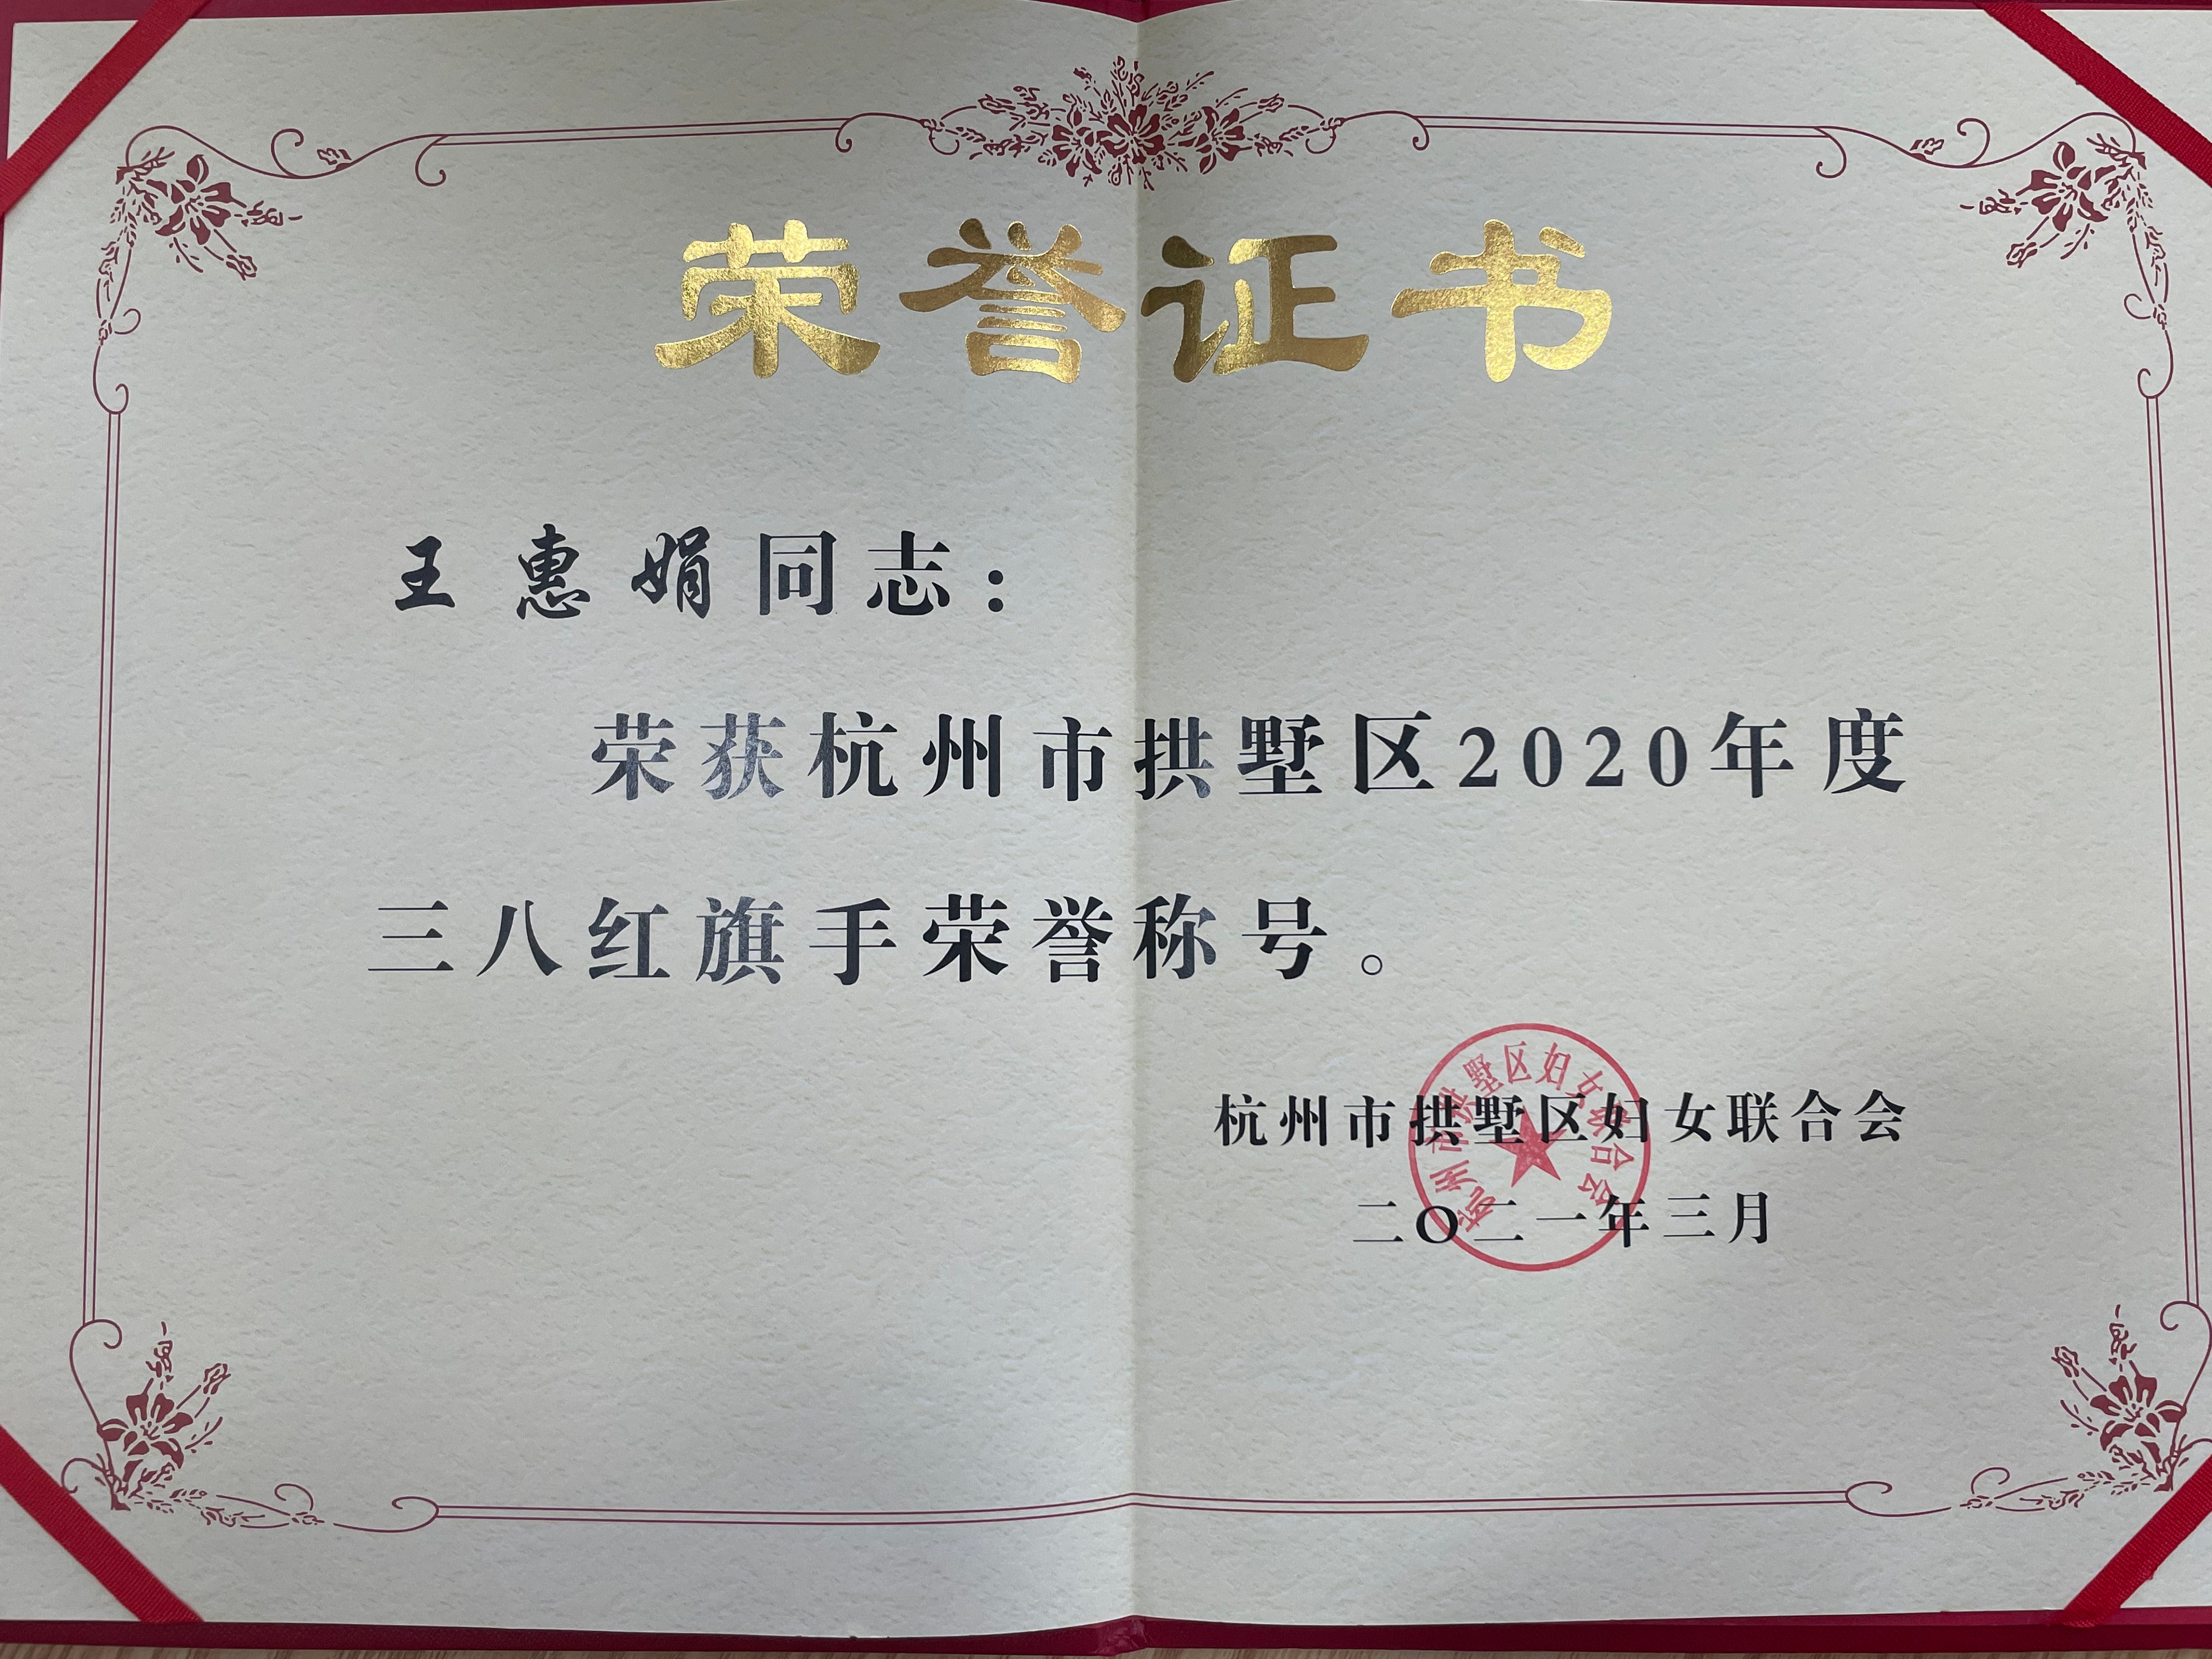 王惠娟荣获区三八红旗手荣誉称号